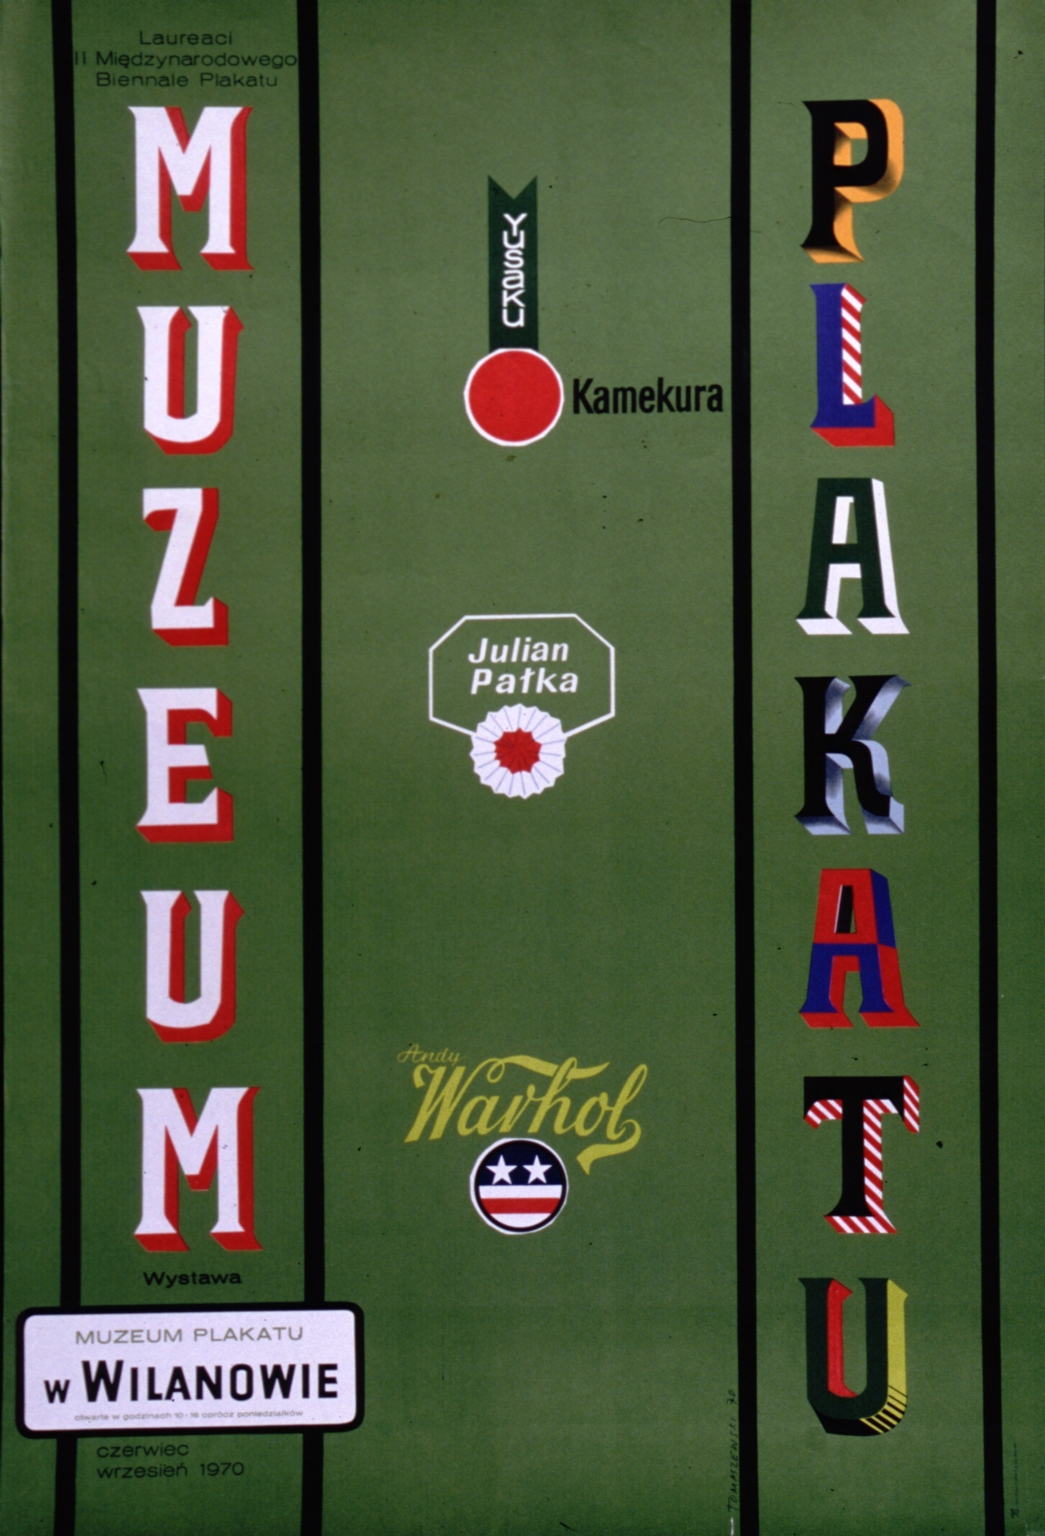 Yusaku Kamekura, Julian Palka, Andy Warhol, laureaci II Miedzynarodowego Biennale Plakatu: wystawa, Muzeum Plakatu w Wilanowie, czerwiec-wrzesien1970